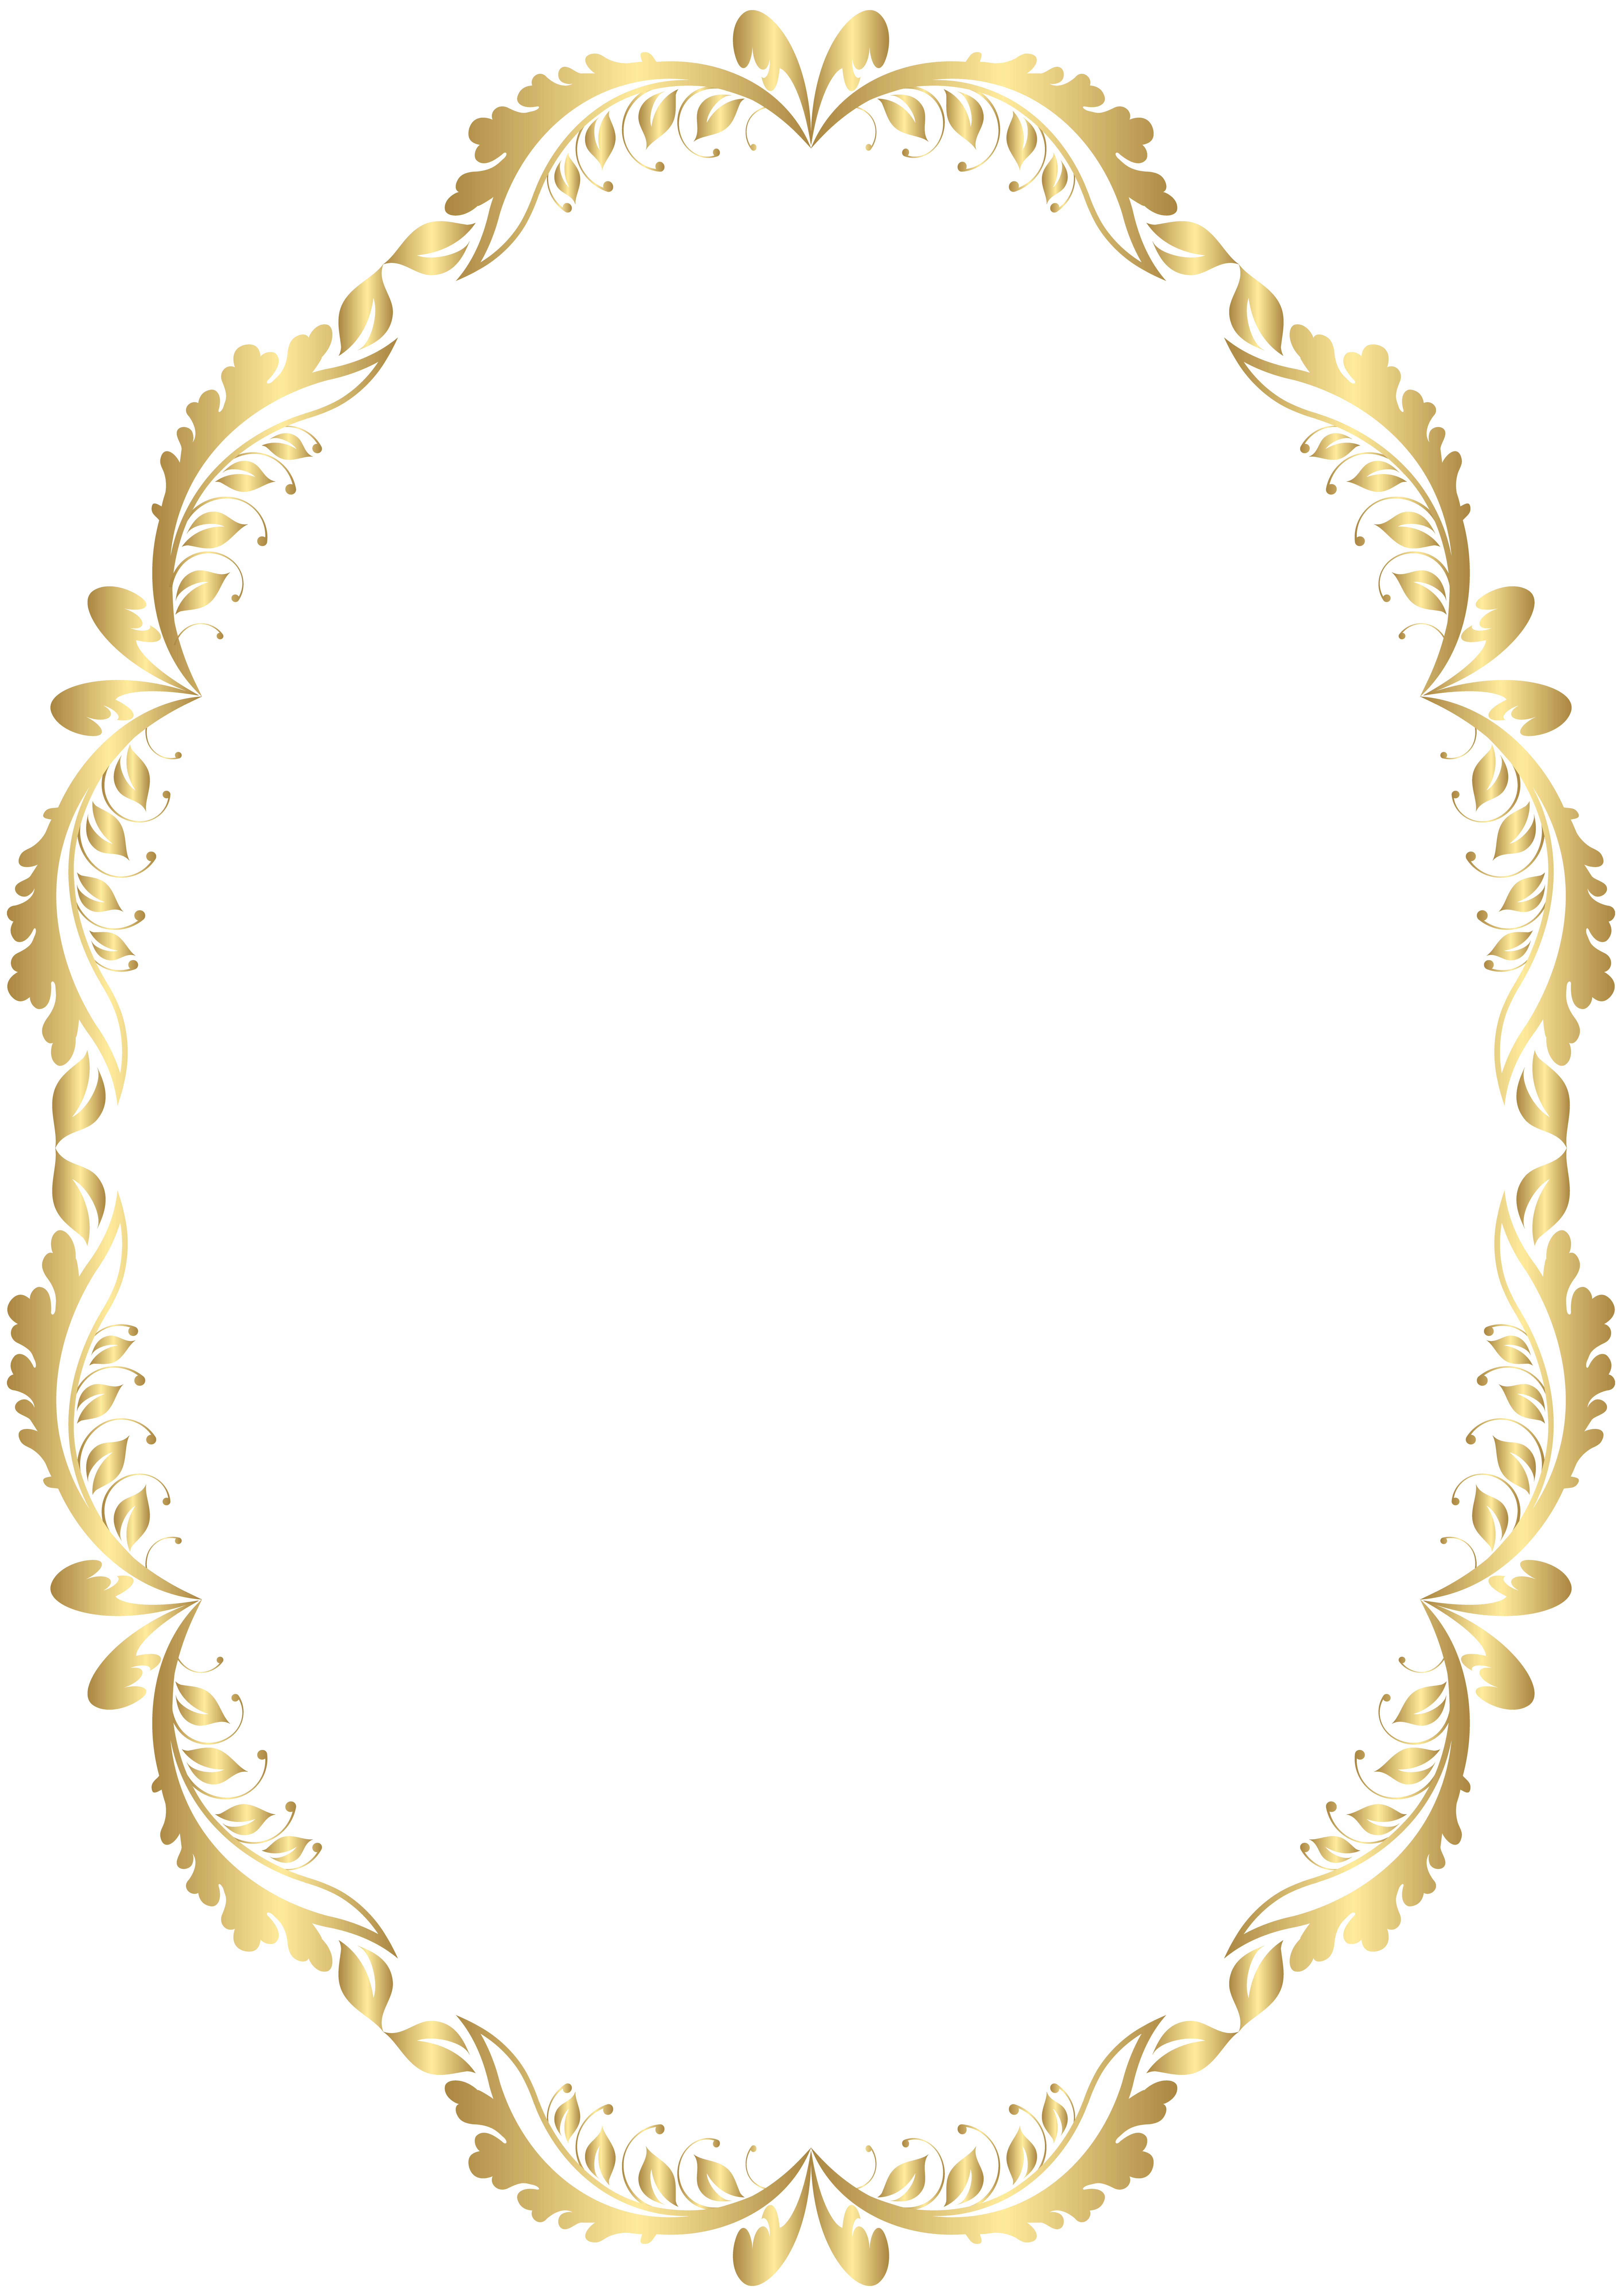 Clipart crown frame. Golden oval border transparent